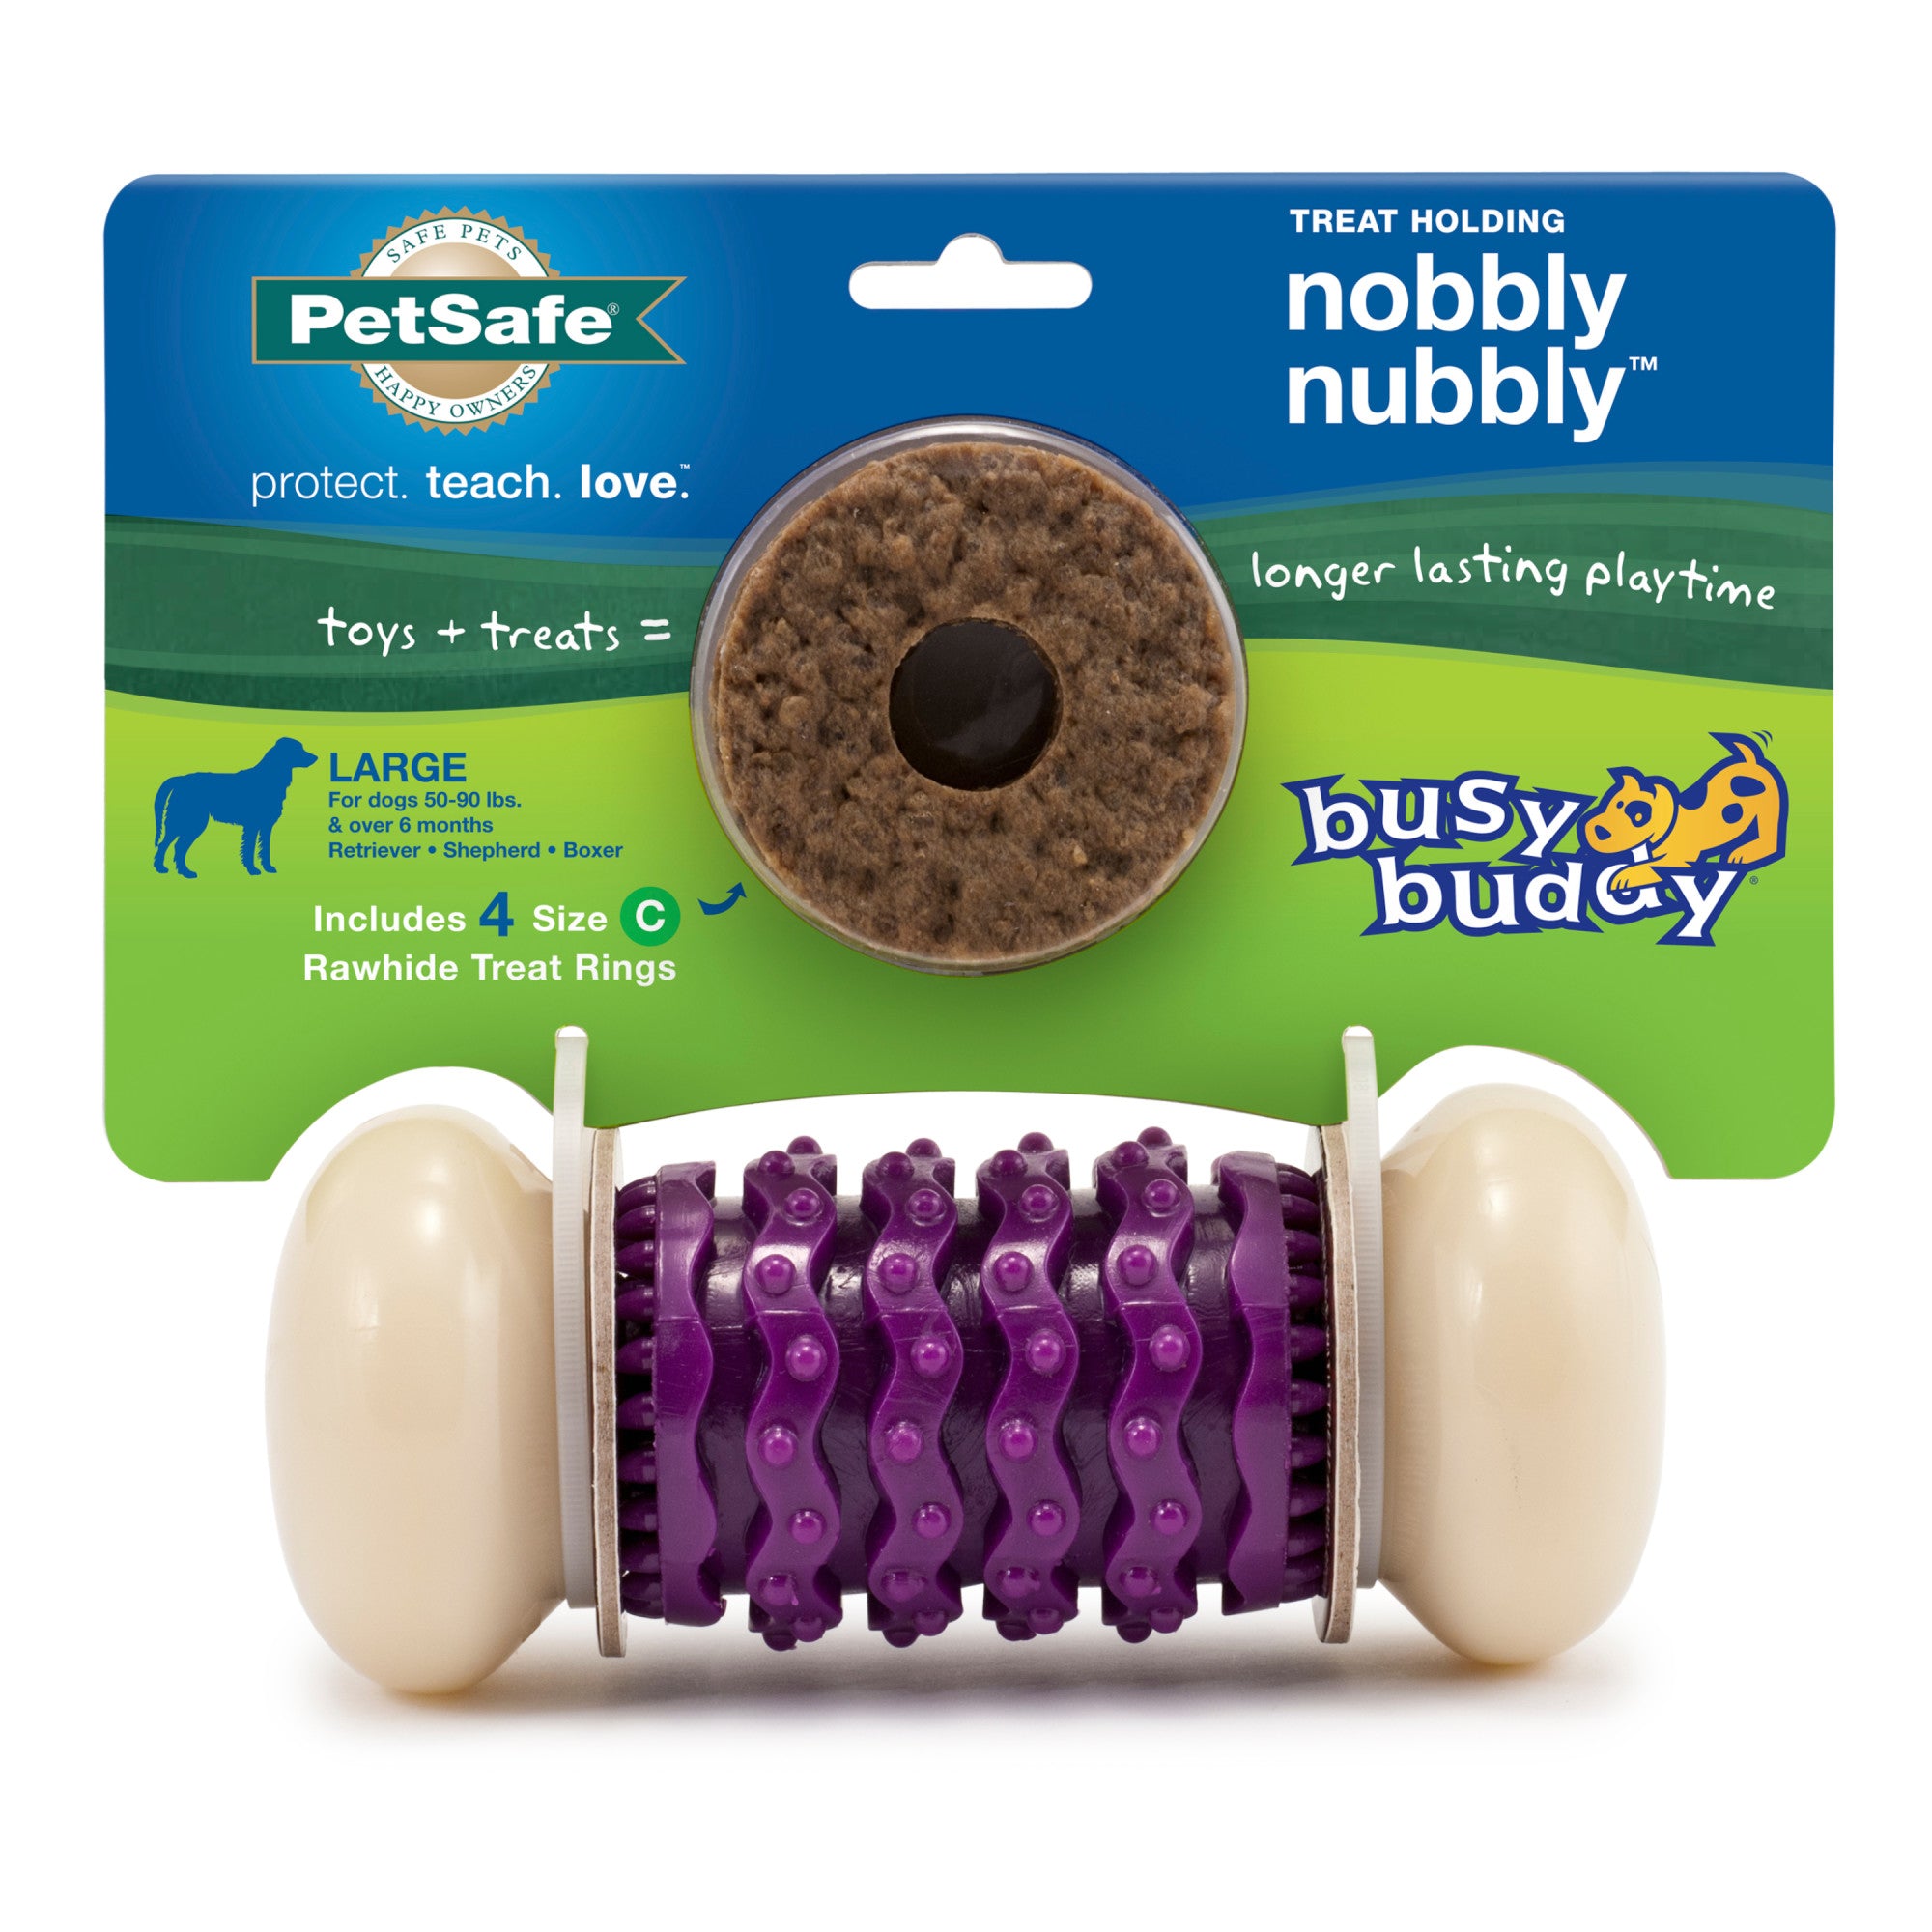 PetSafe Busy Buddy Nobbly Nubbly Treat Holding Dog Toy – Strong